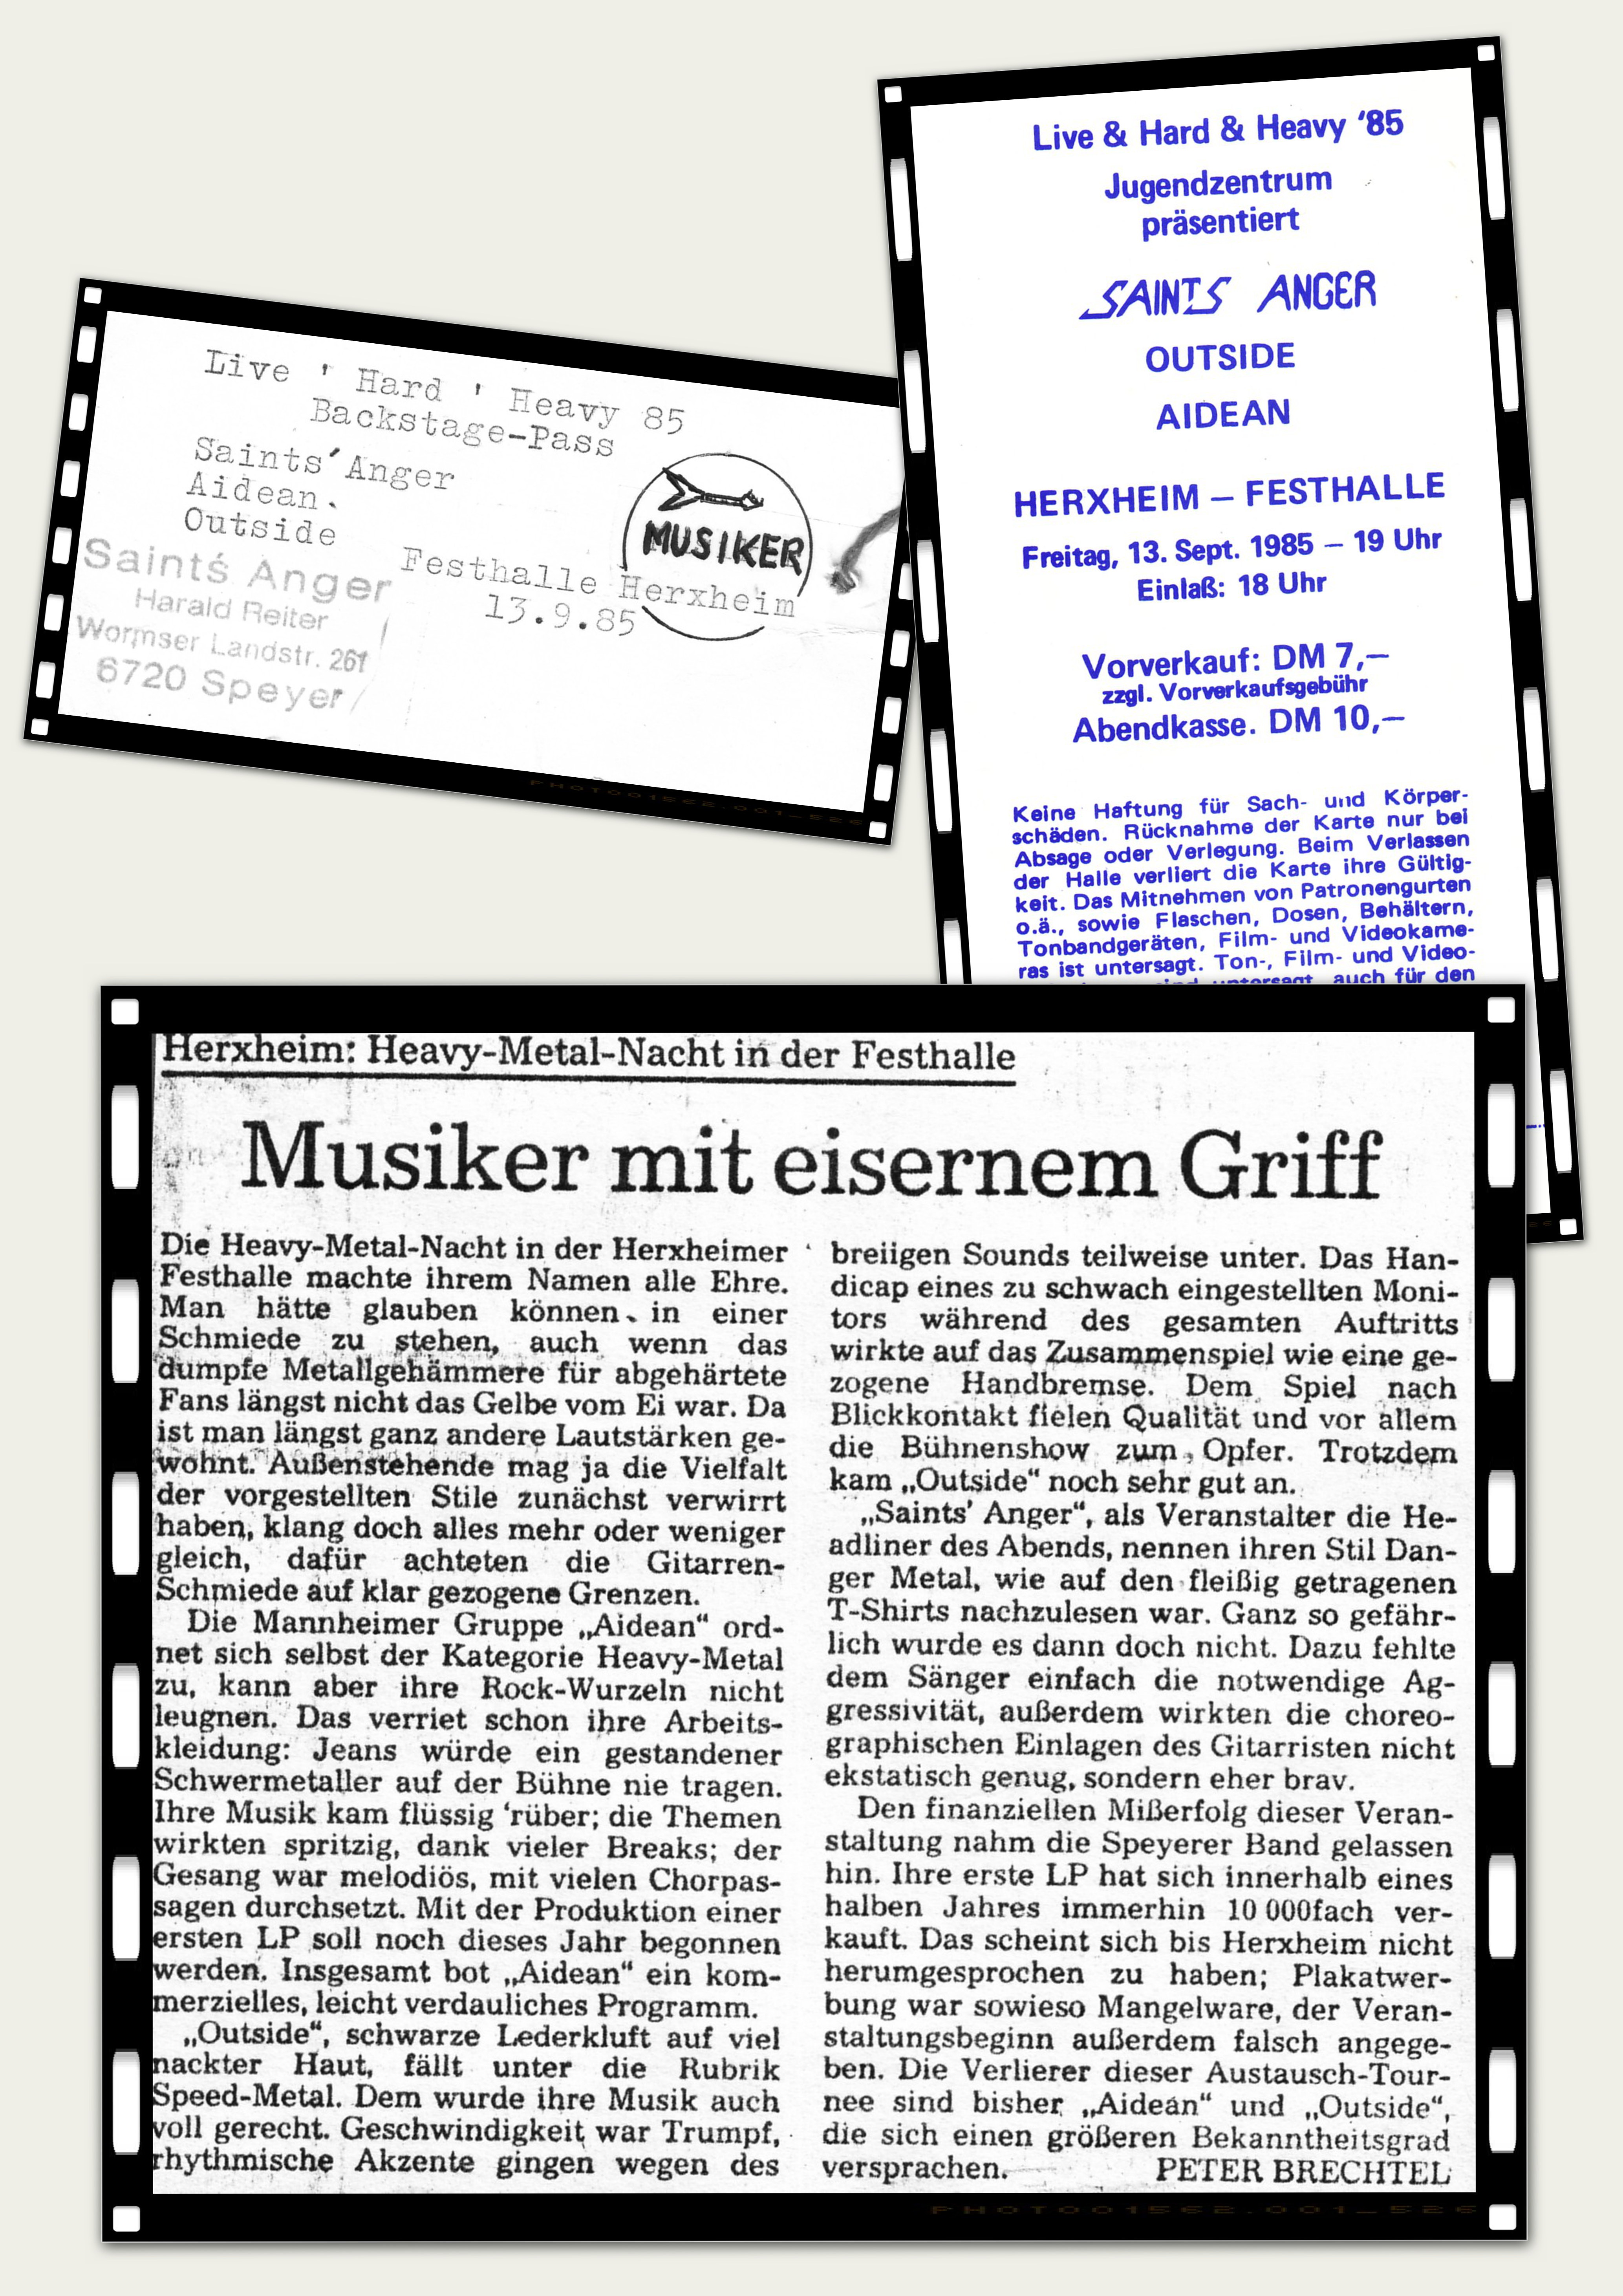 13.09.1985 - "Festhalle" Herxheim